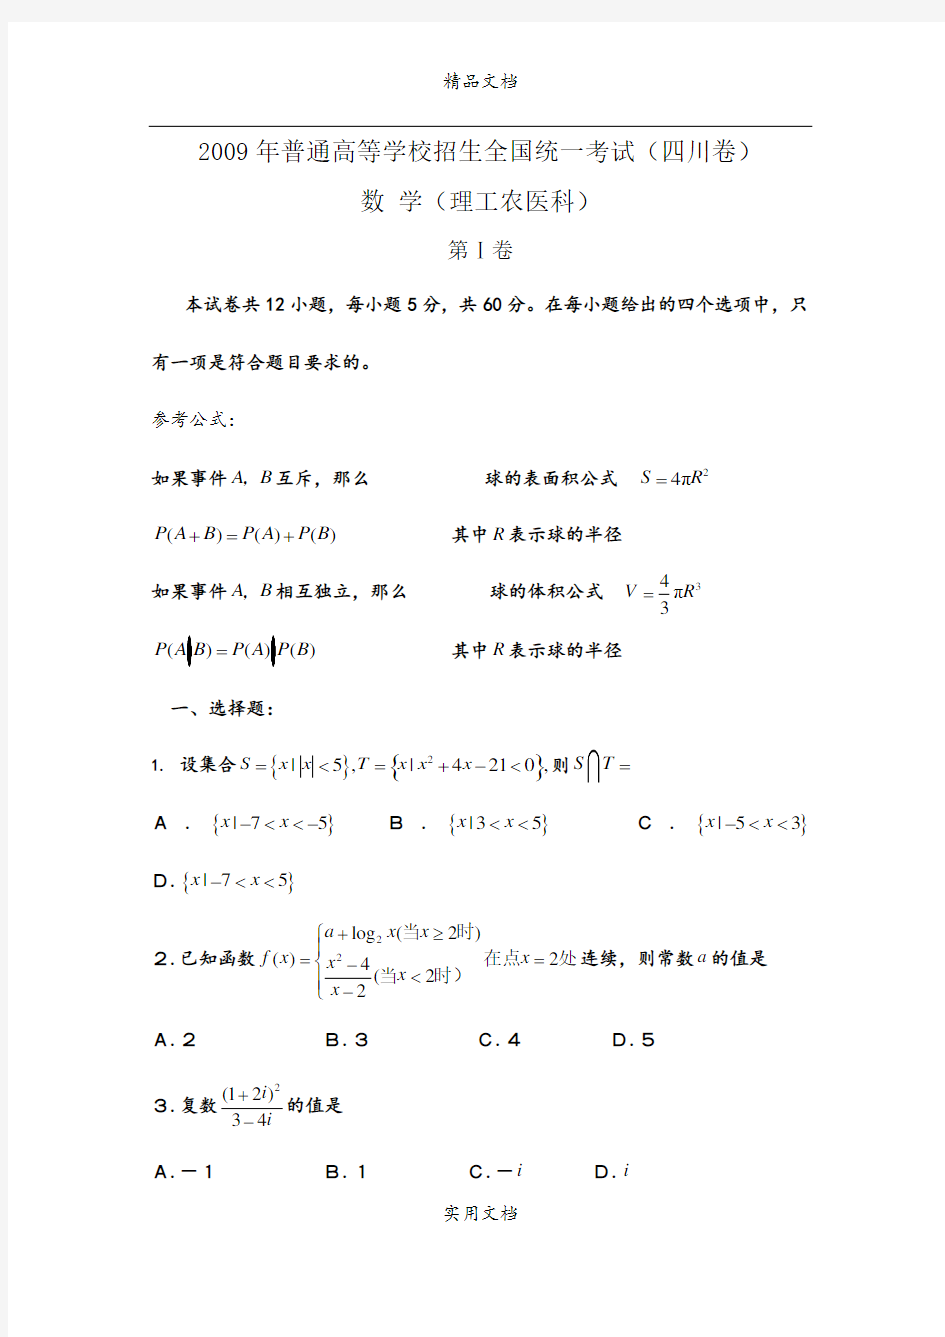 2009年全国高考理科数学试题及答案-四川卷